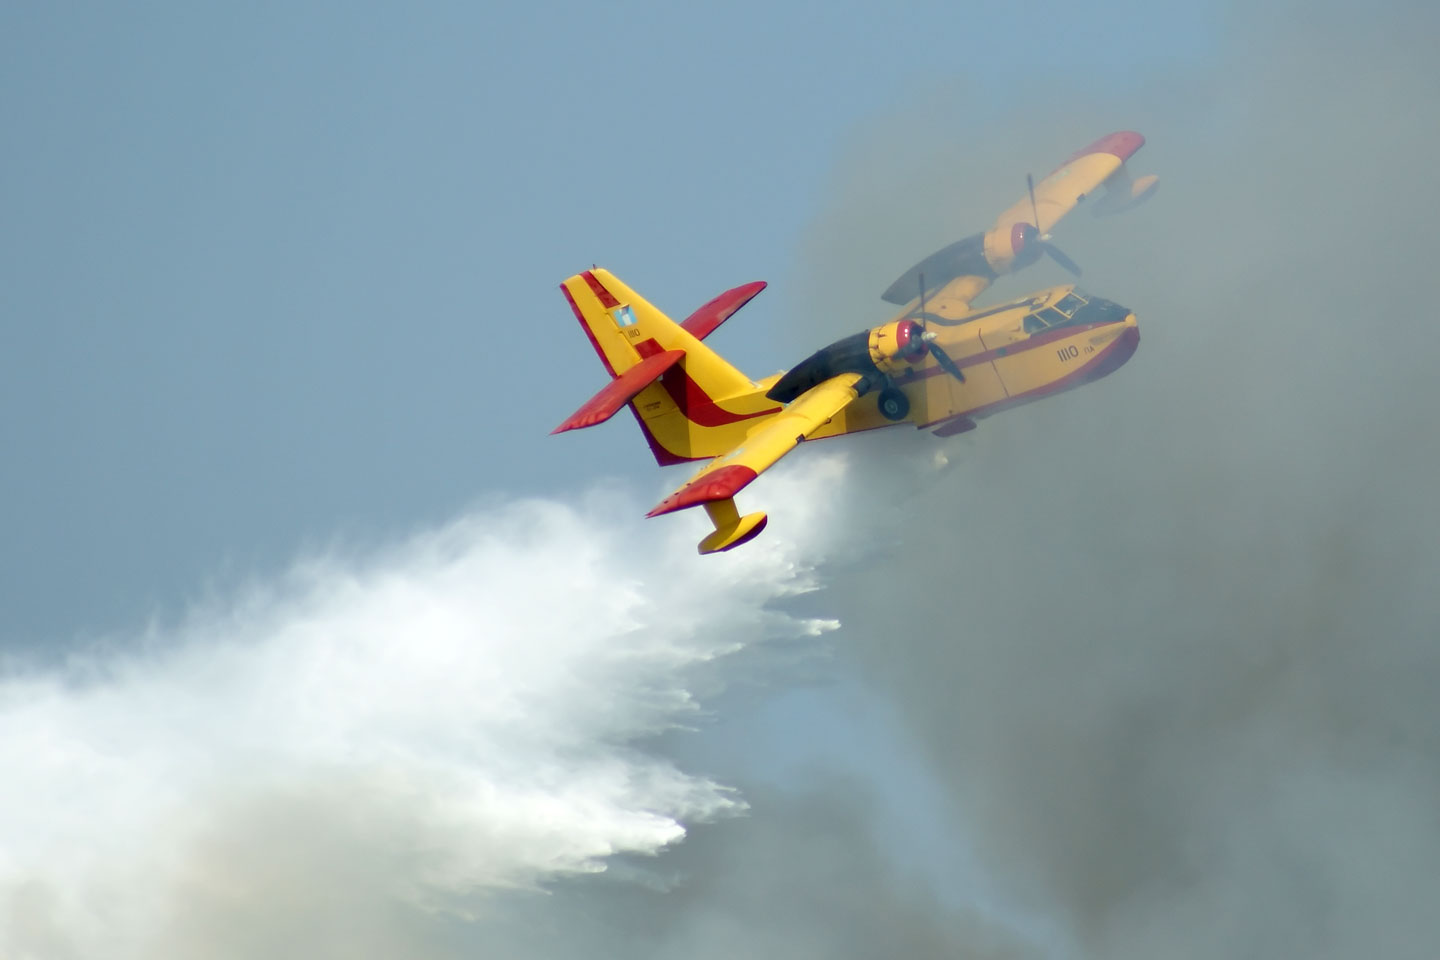 Διαθεσιμότητα πυροσβεστικών αεροσκαφών: Η ΝΔ μιλά για ευχολόγια